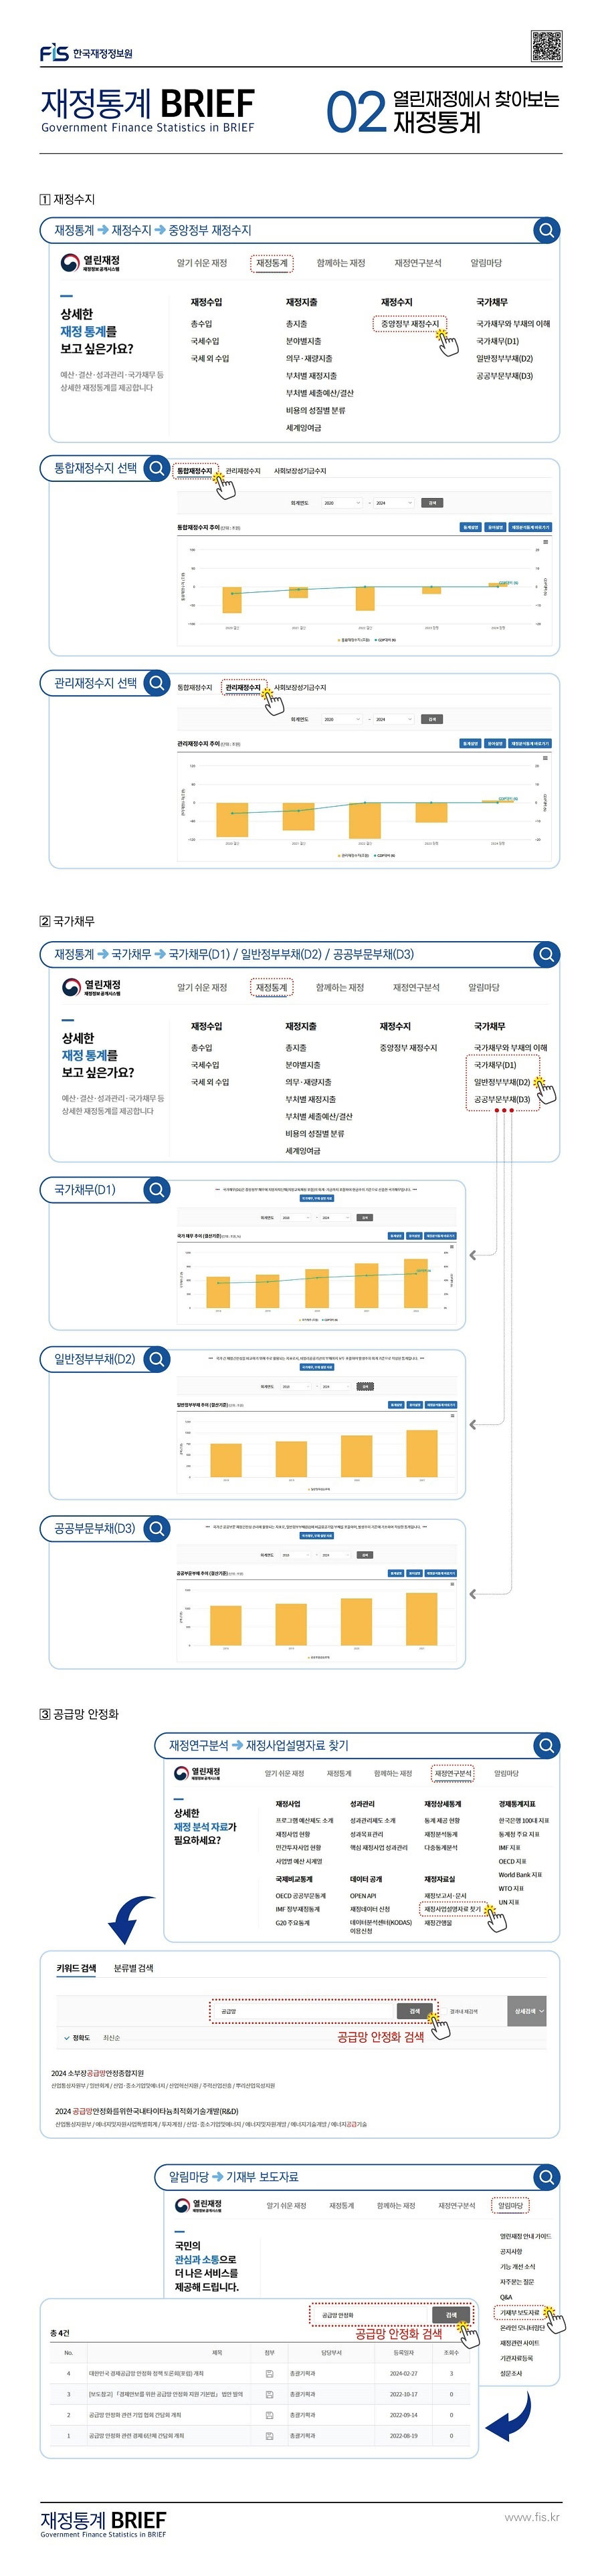 한국재정정보원 재정통계 BRIEF 02 열린재정에서 찾아보는 재정통계 : 클릭하시면 해당 게시물의 첨부파일을 통해 자세한 사항을 확인하실 수 있습니다.